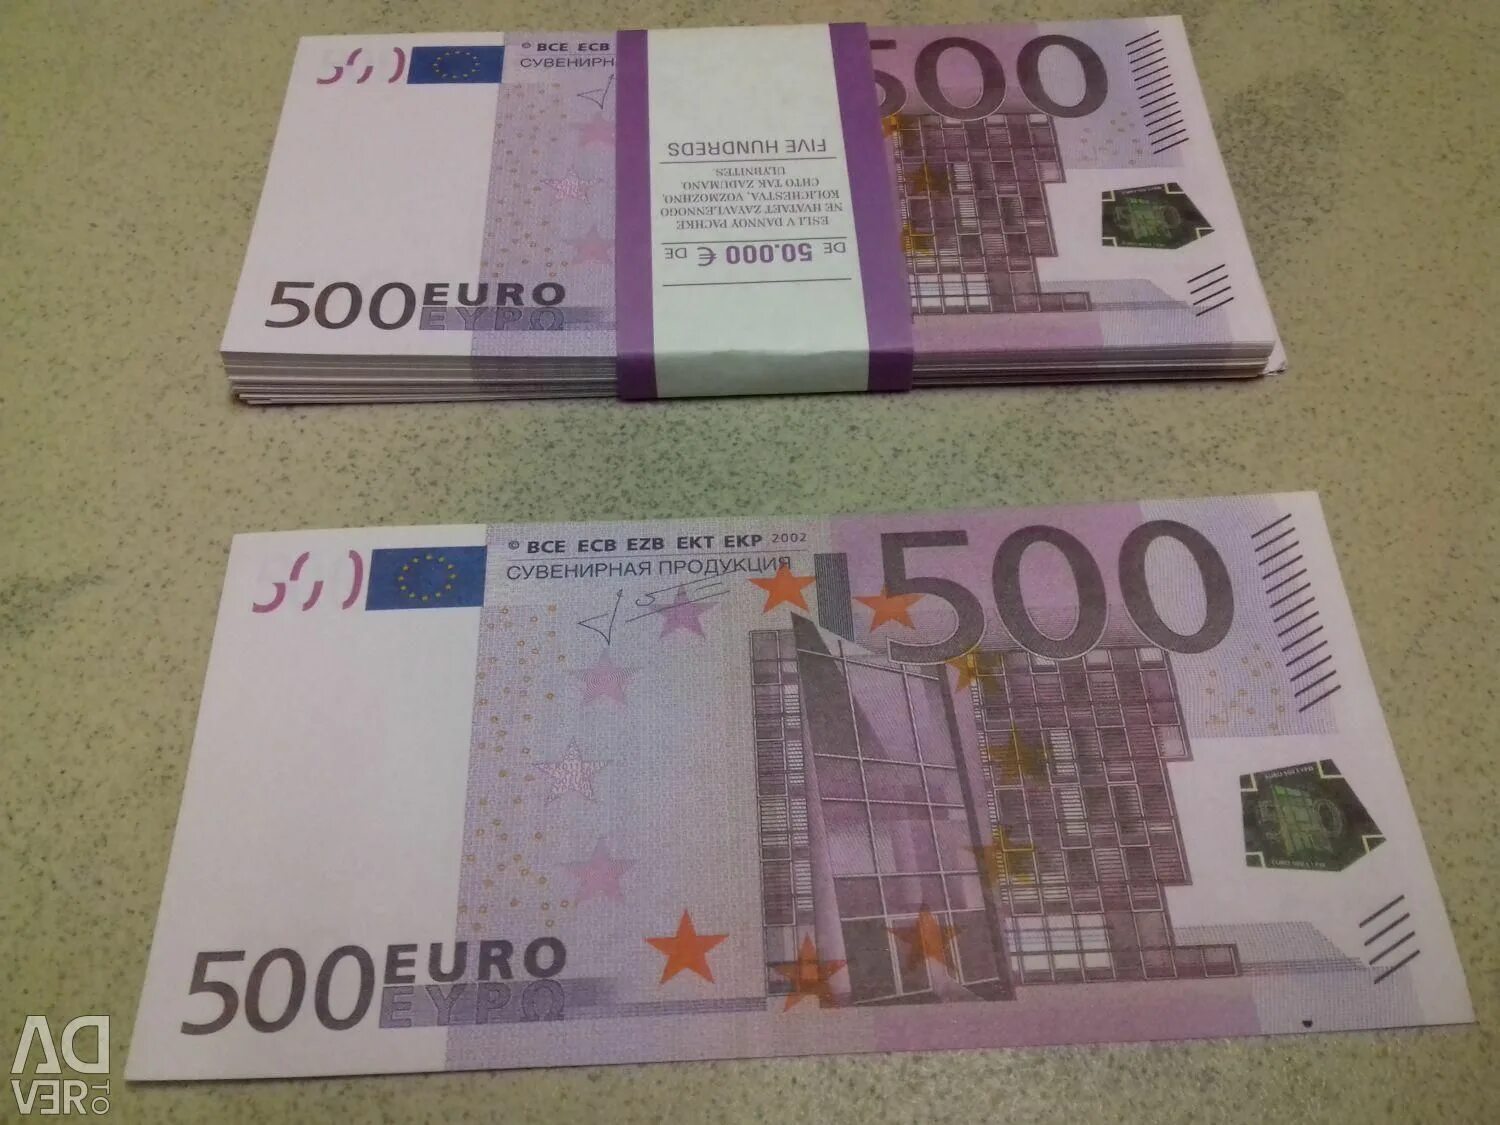 500 евро это сколько. Пачка купюр 500 евро. 500 Евро банка приколов. 500 Евро в рублях. 500 Евро купюра сувенирная продукция.